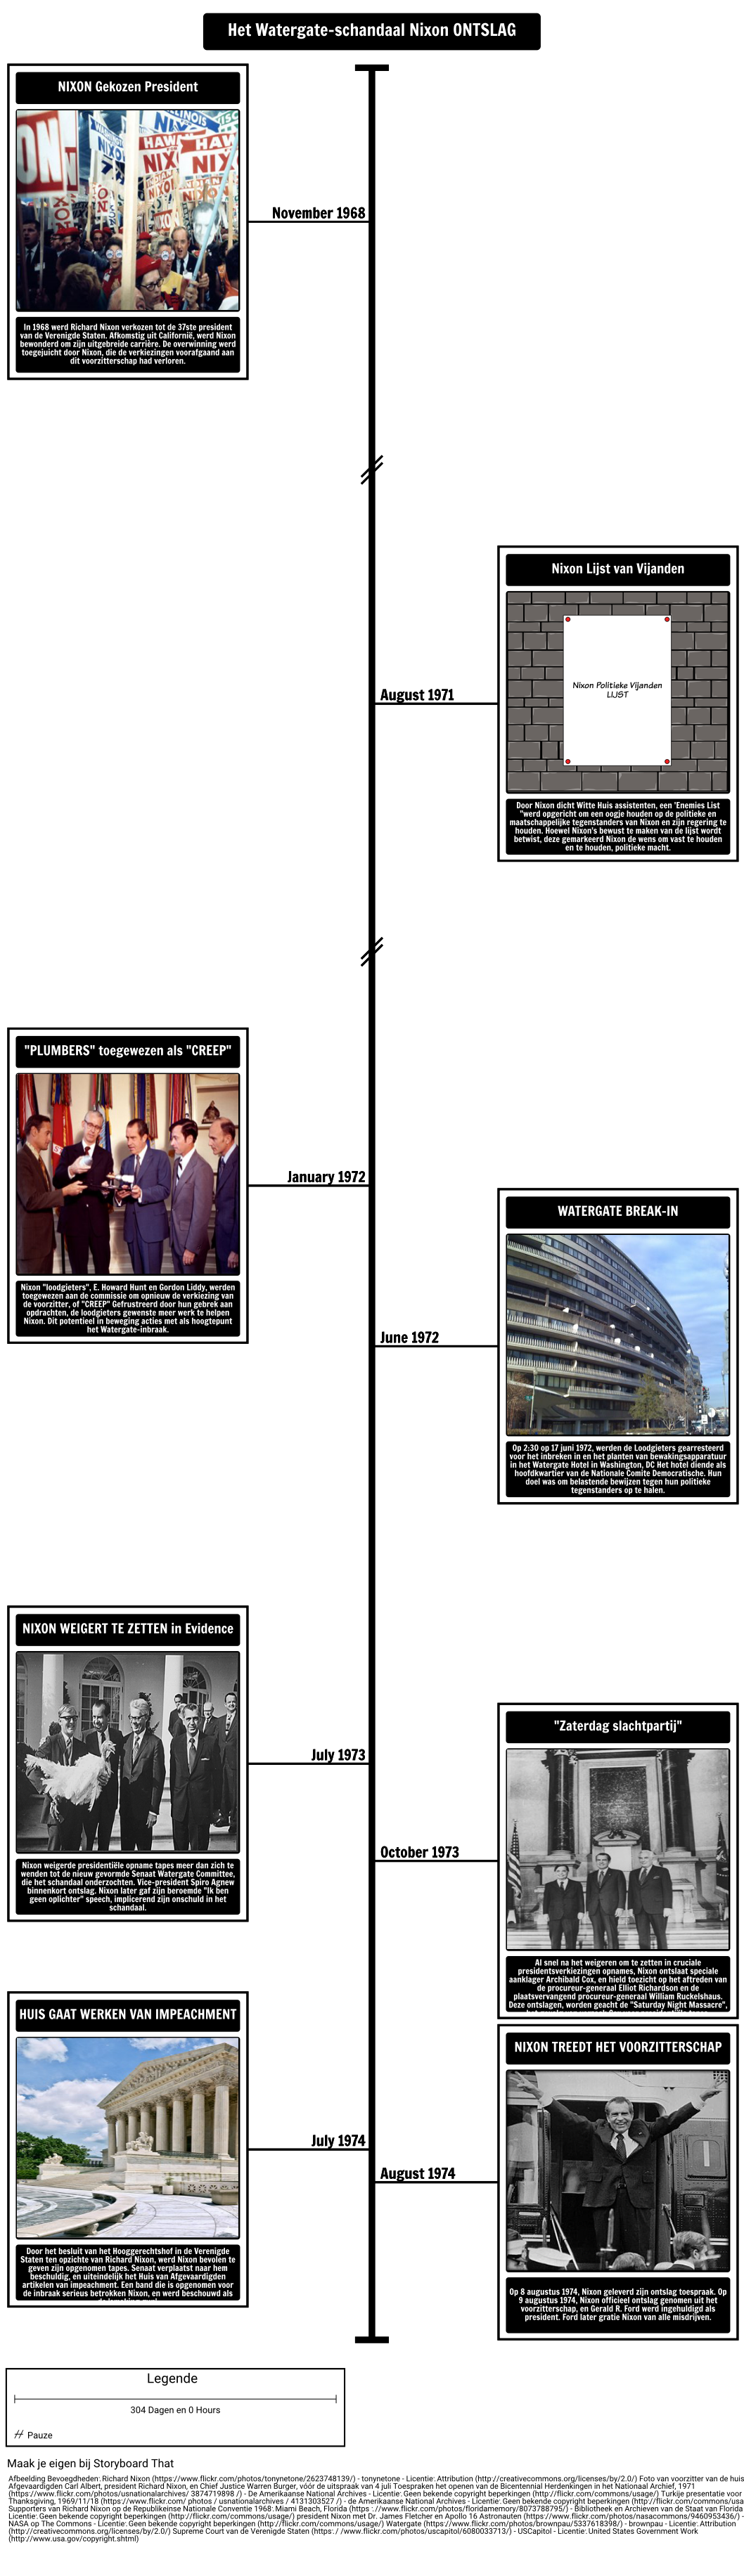 Het Watergate Scandal Tijdlijn en Nixon Berusting